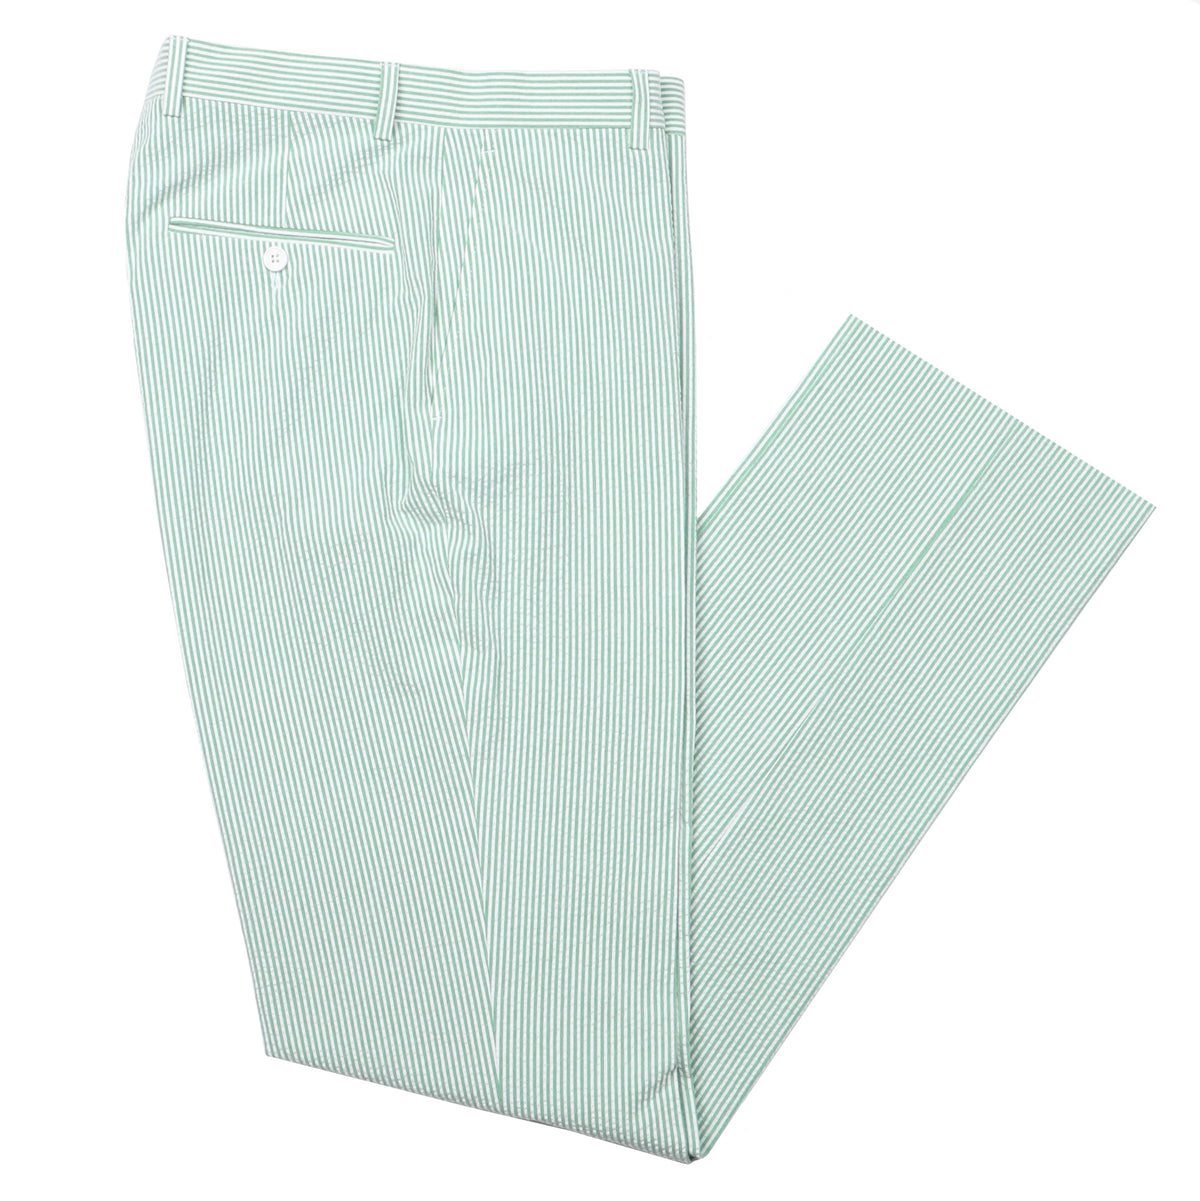 Mint Julep Green Seersucker Stretch Pant | Seersucker Suit Separates